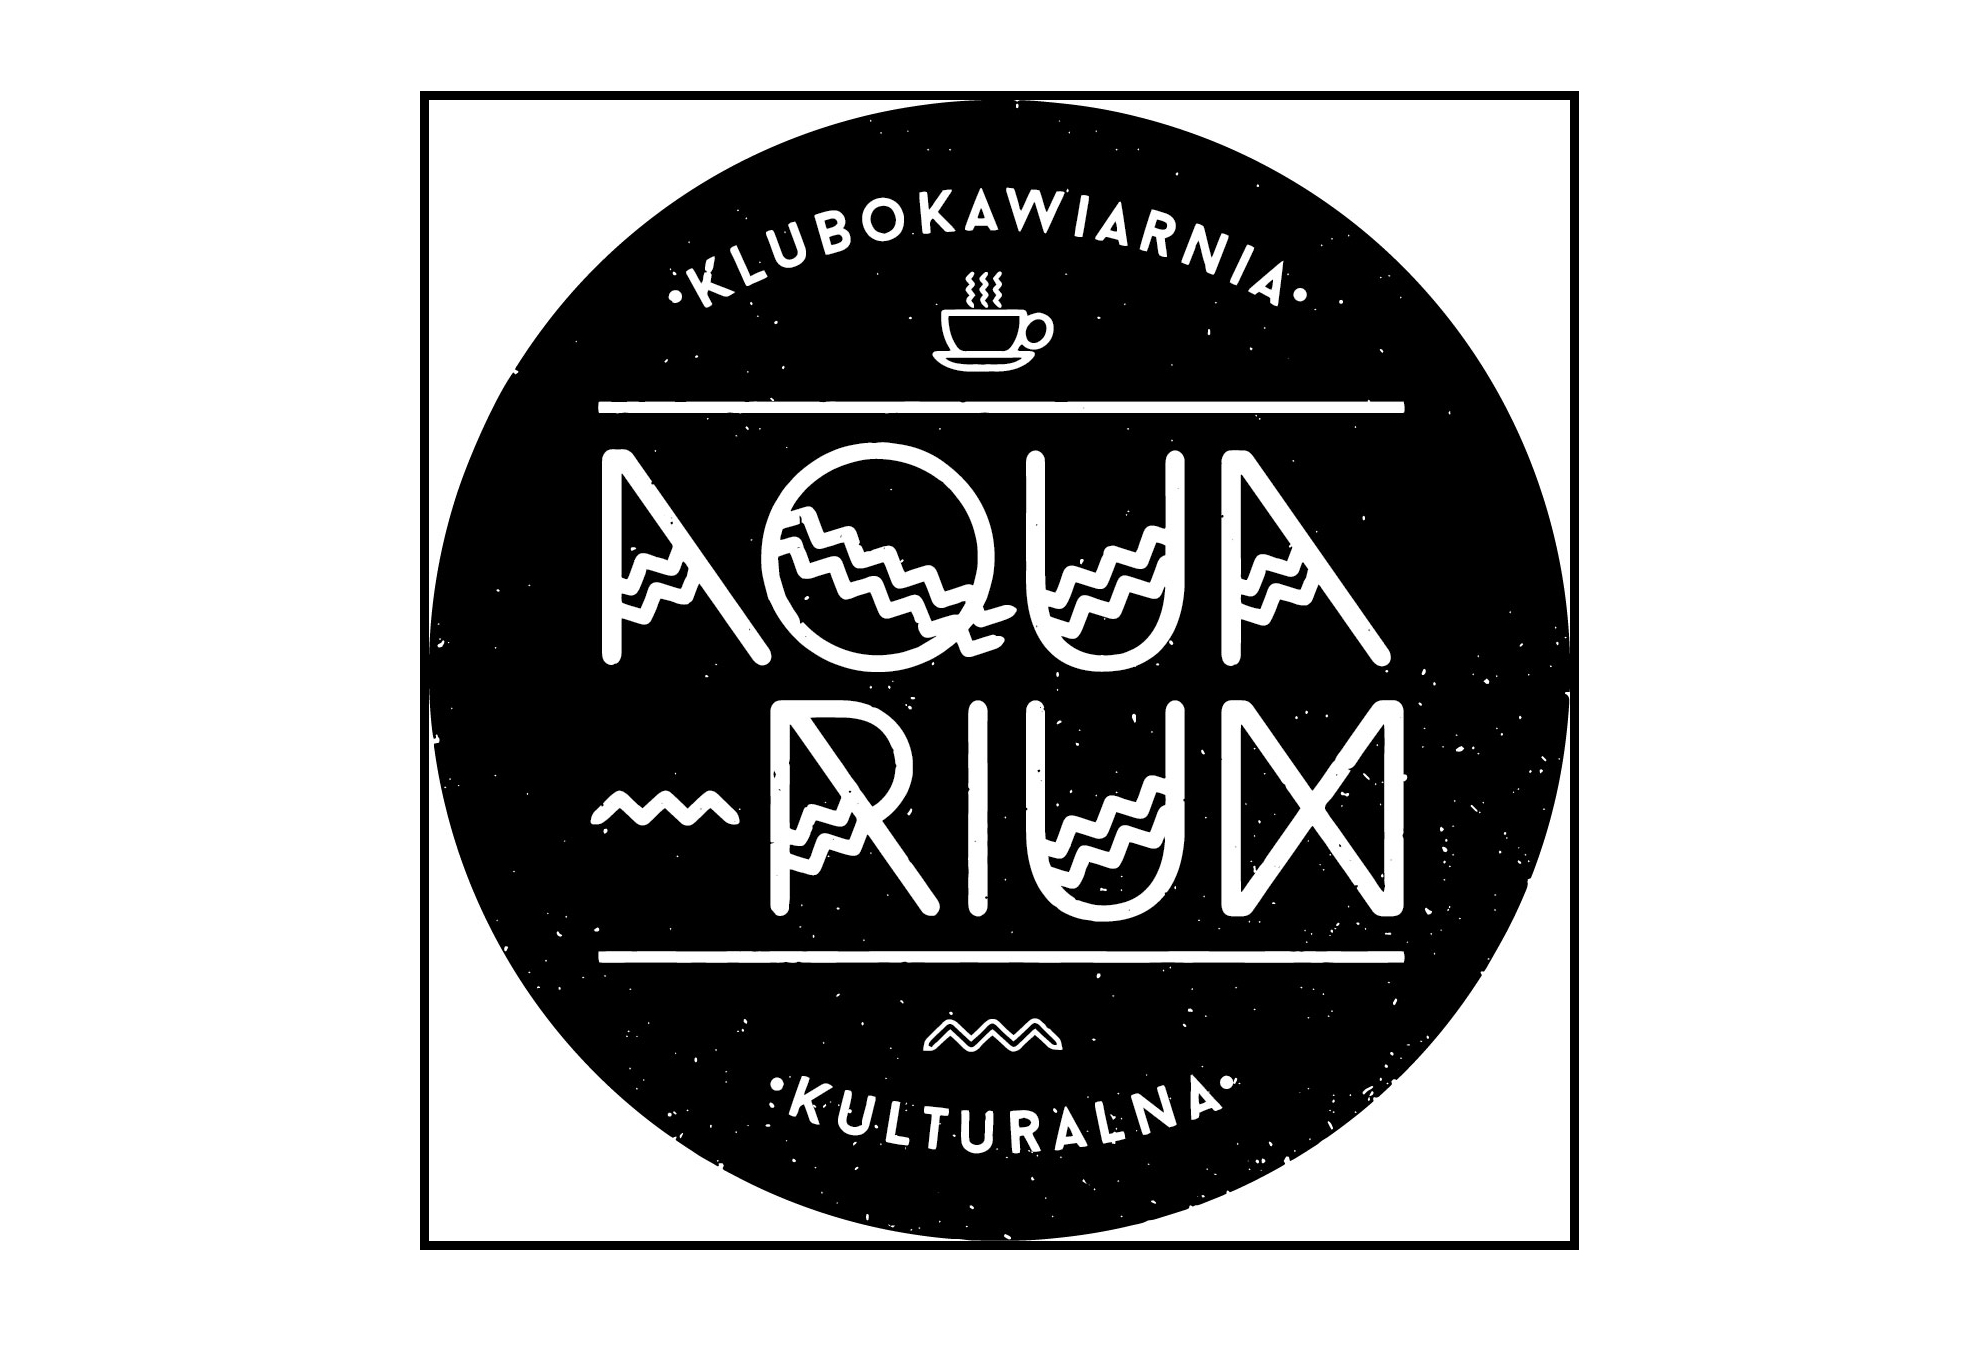  Mysikrólik - na pomoc dzikim zwierzętom na zdjęciu logo Aquarium